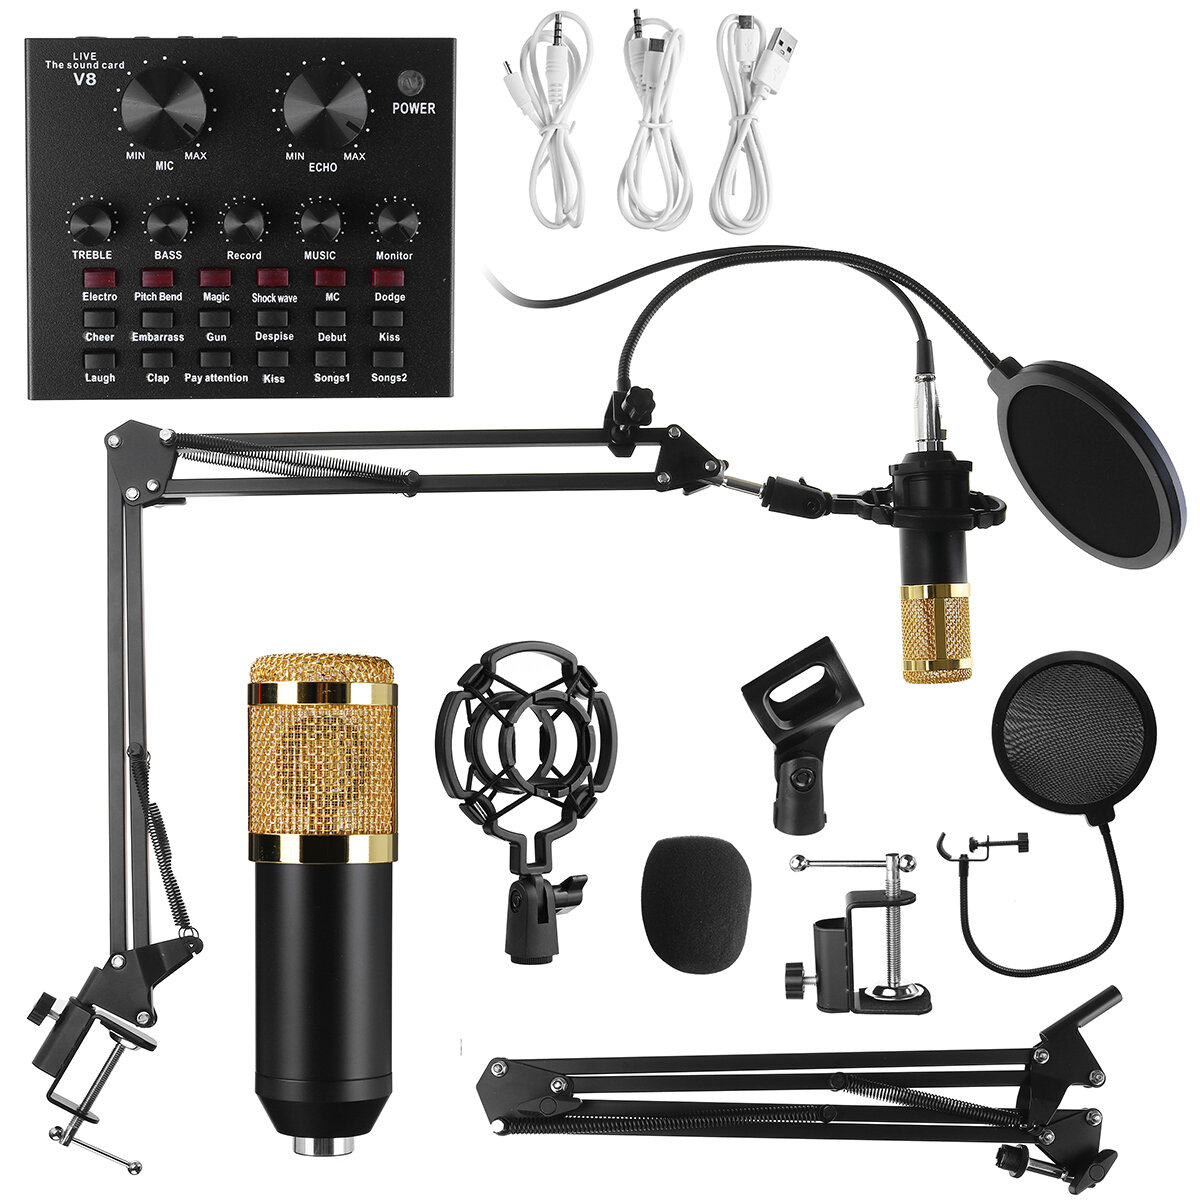 Bakeey 9in1 Condenser Micrófono Kit Tarjeta de sonido en vivo Micrófono Stand Shock Mount Set de micrófono profesional p